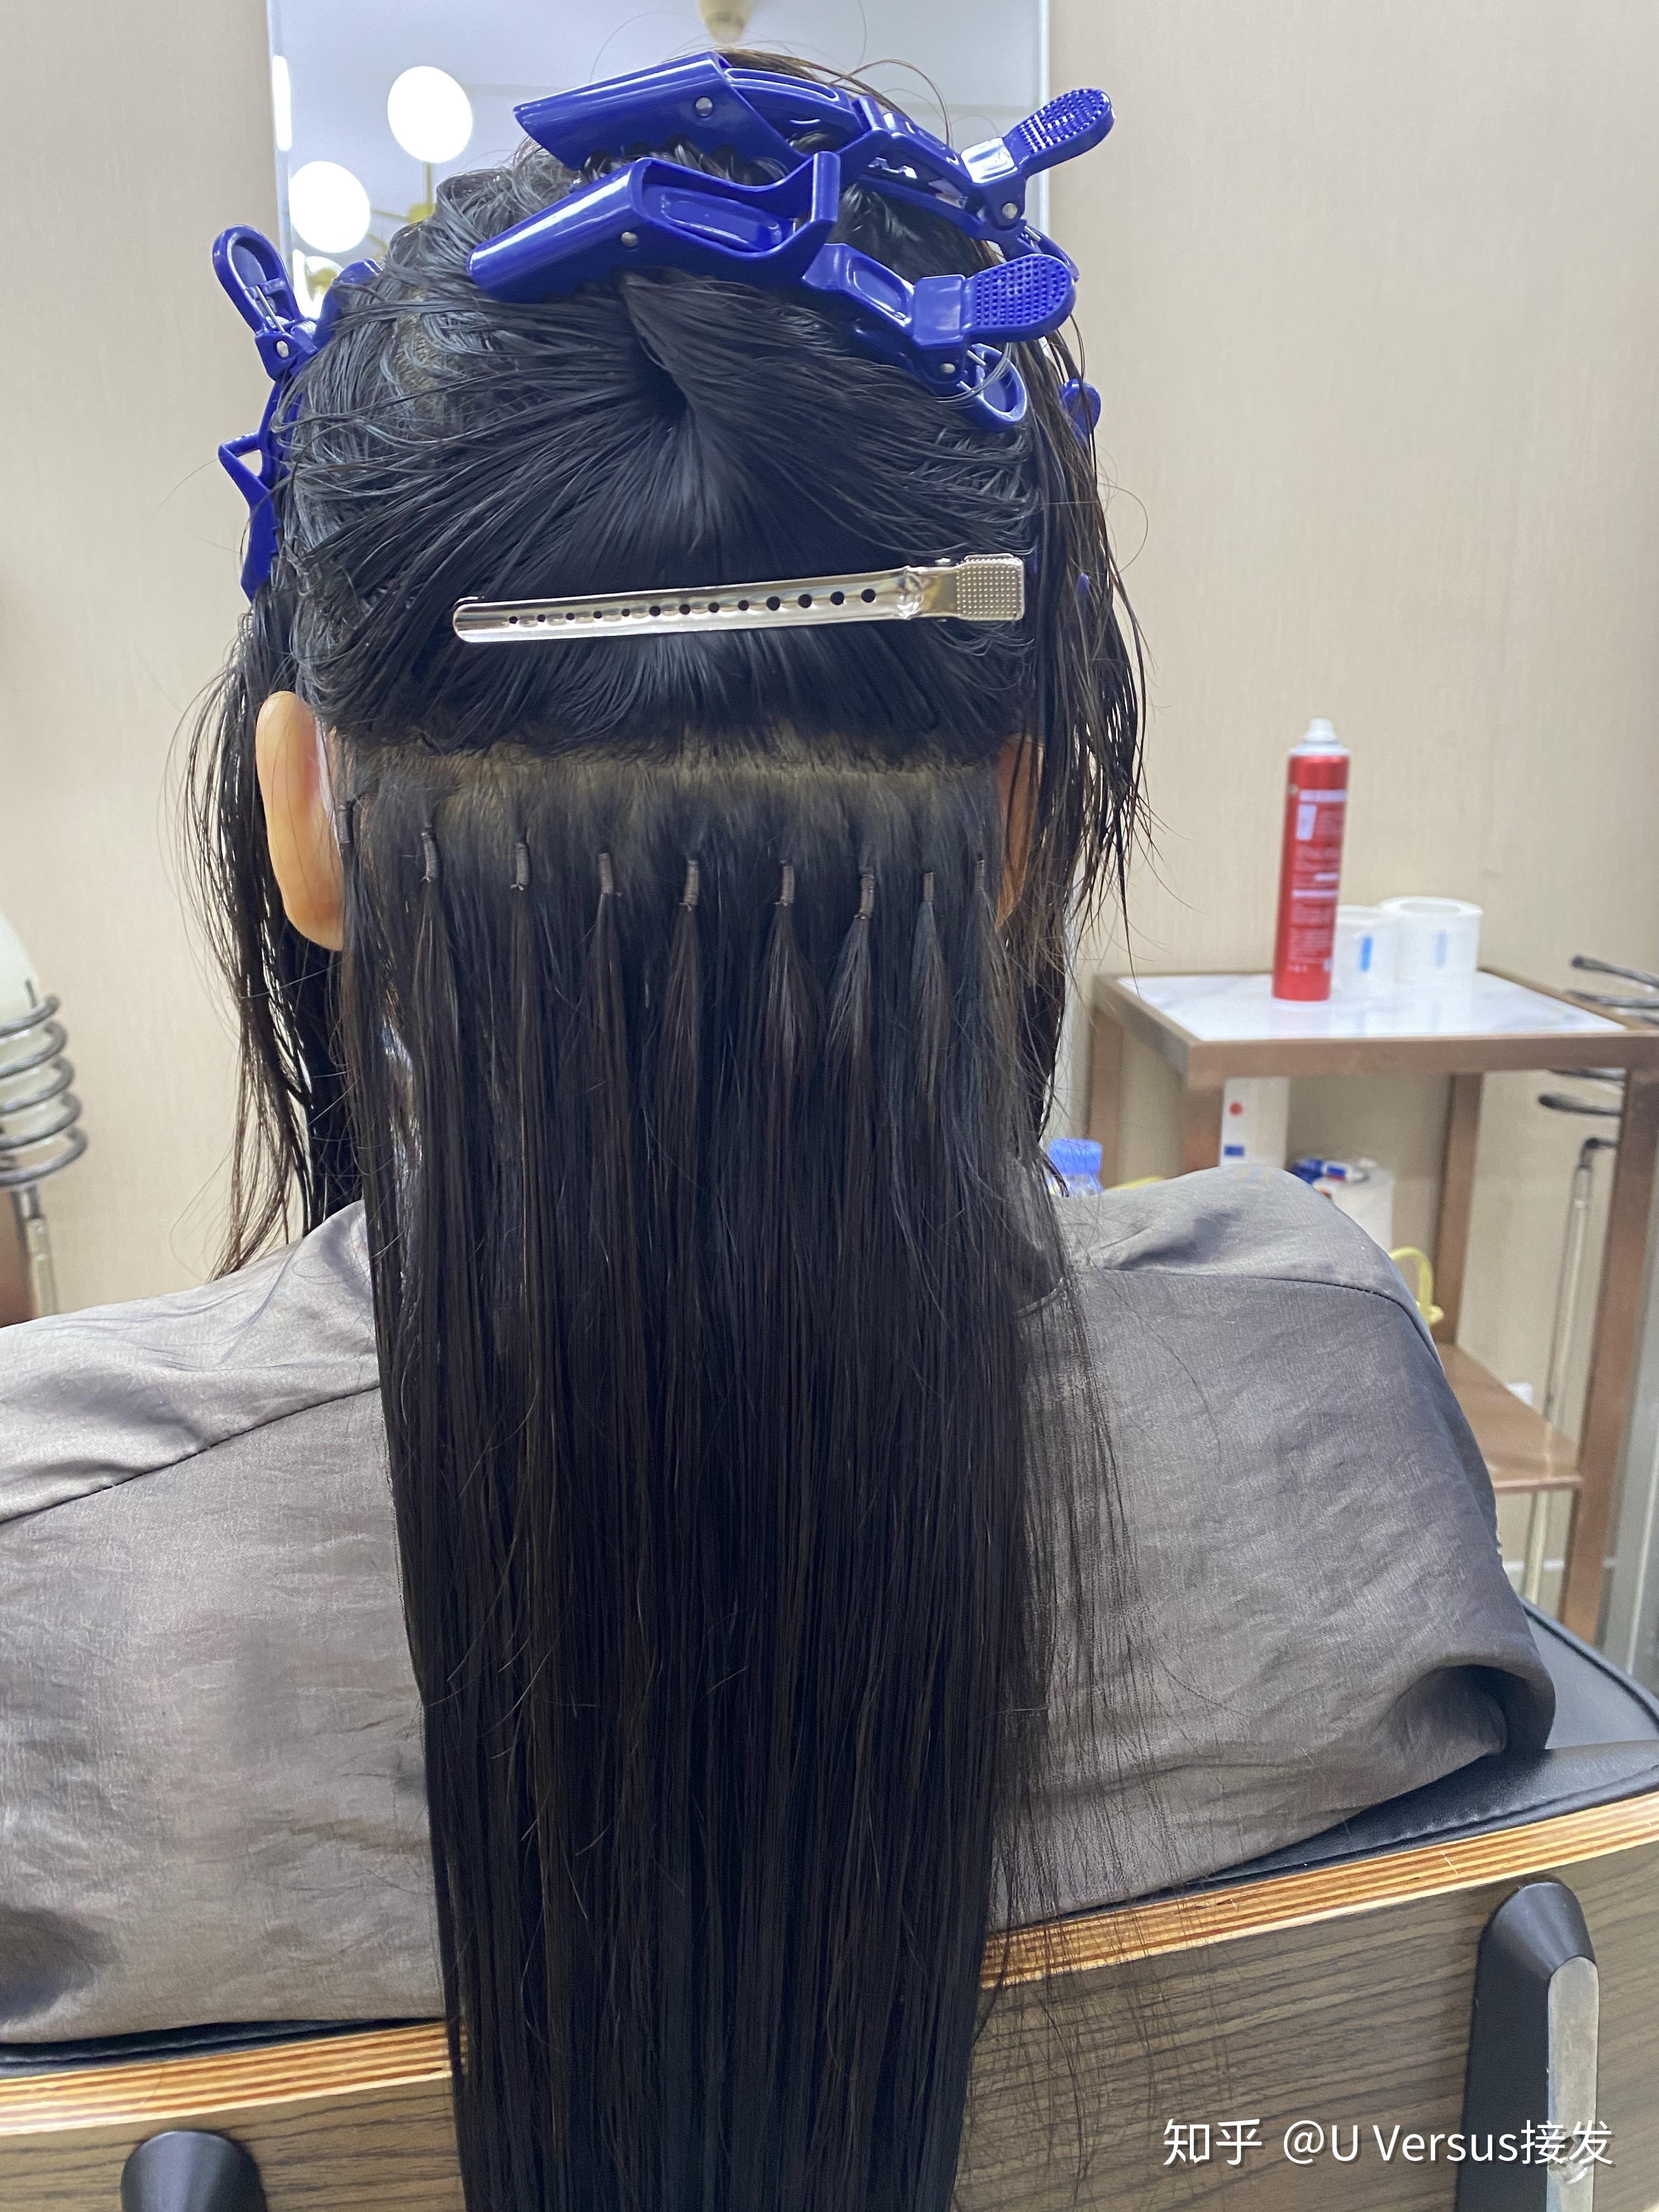 纳米无痕接发。#接发 #驳发#Nano hair extension #深圳接发 #深圳 #深圳市 | MAX YAN | Flickr